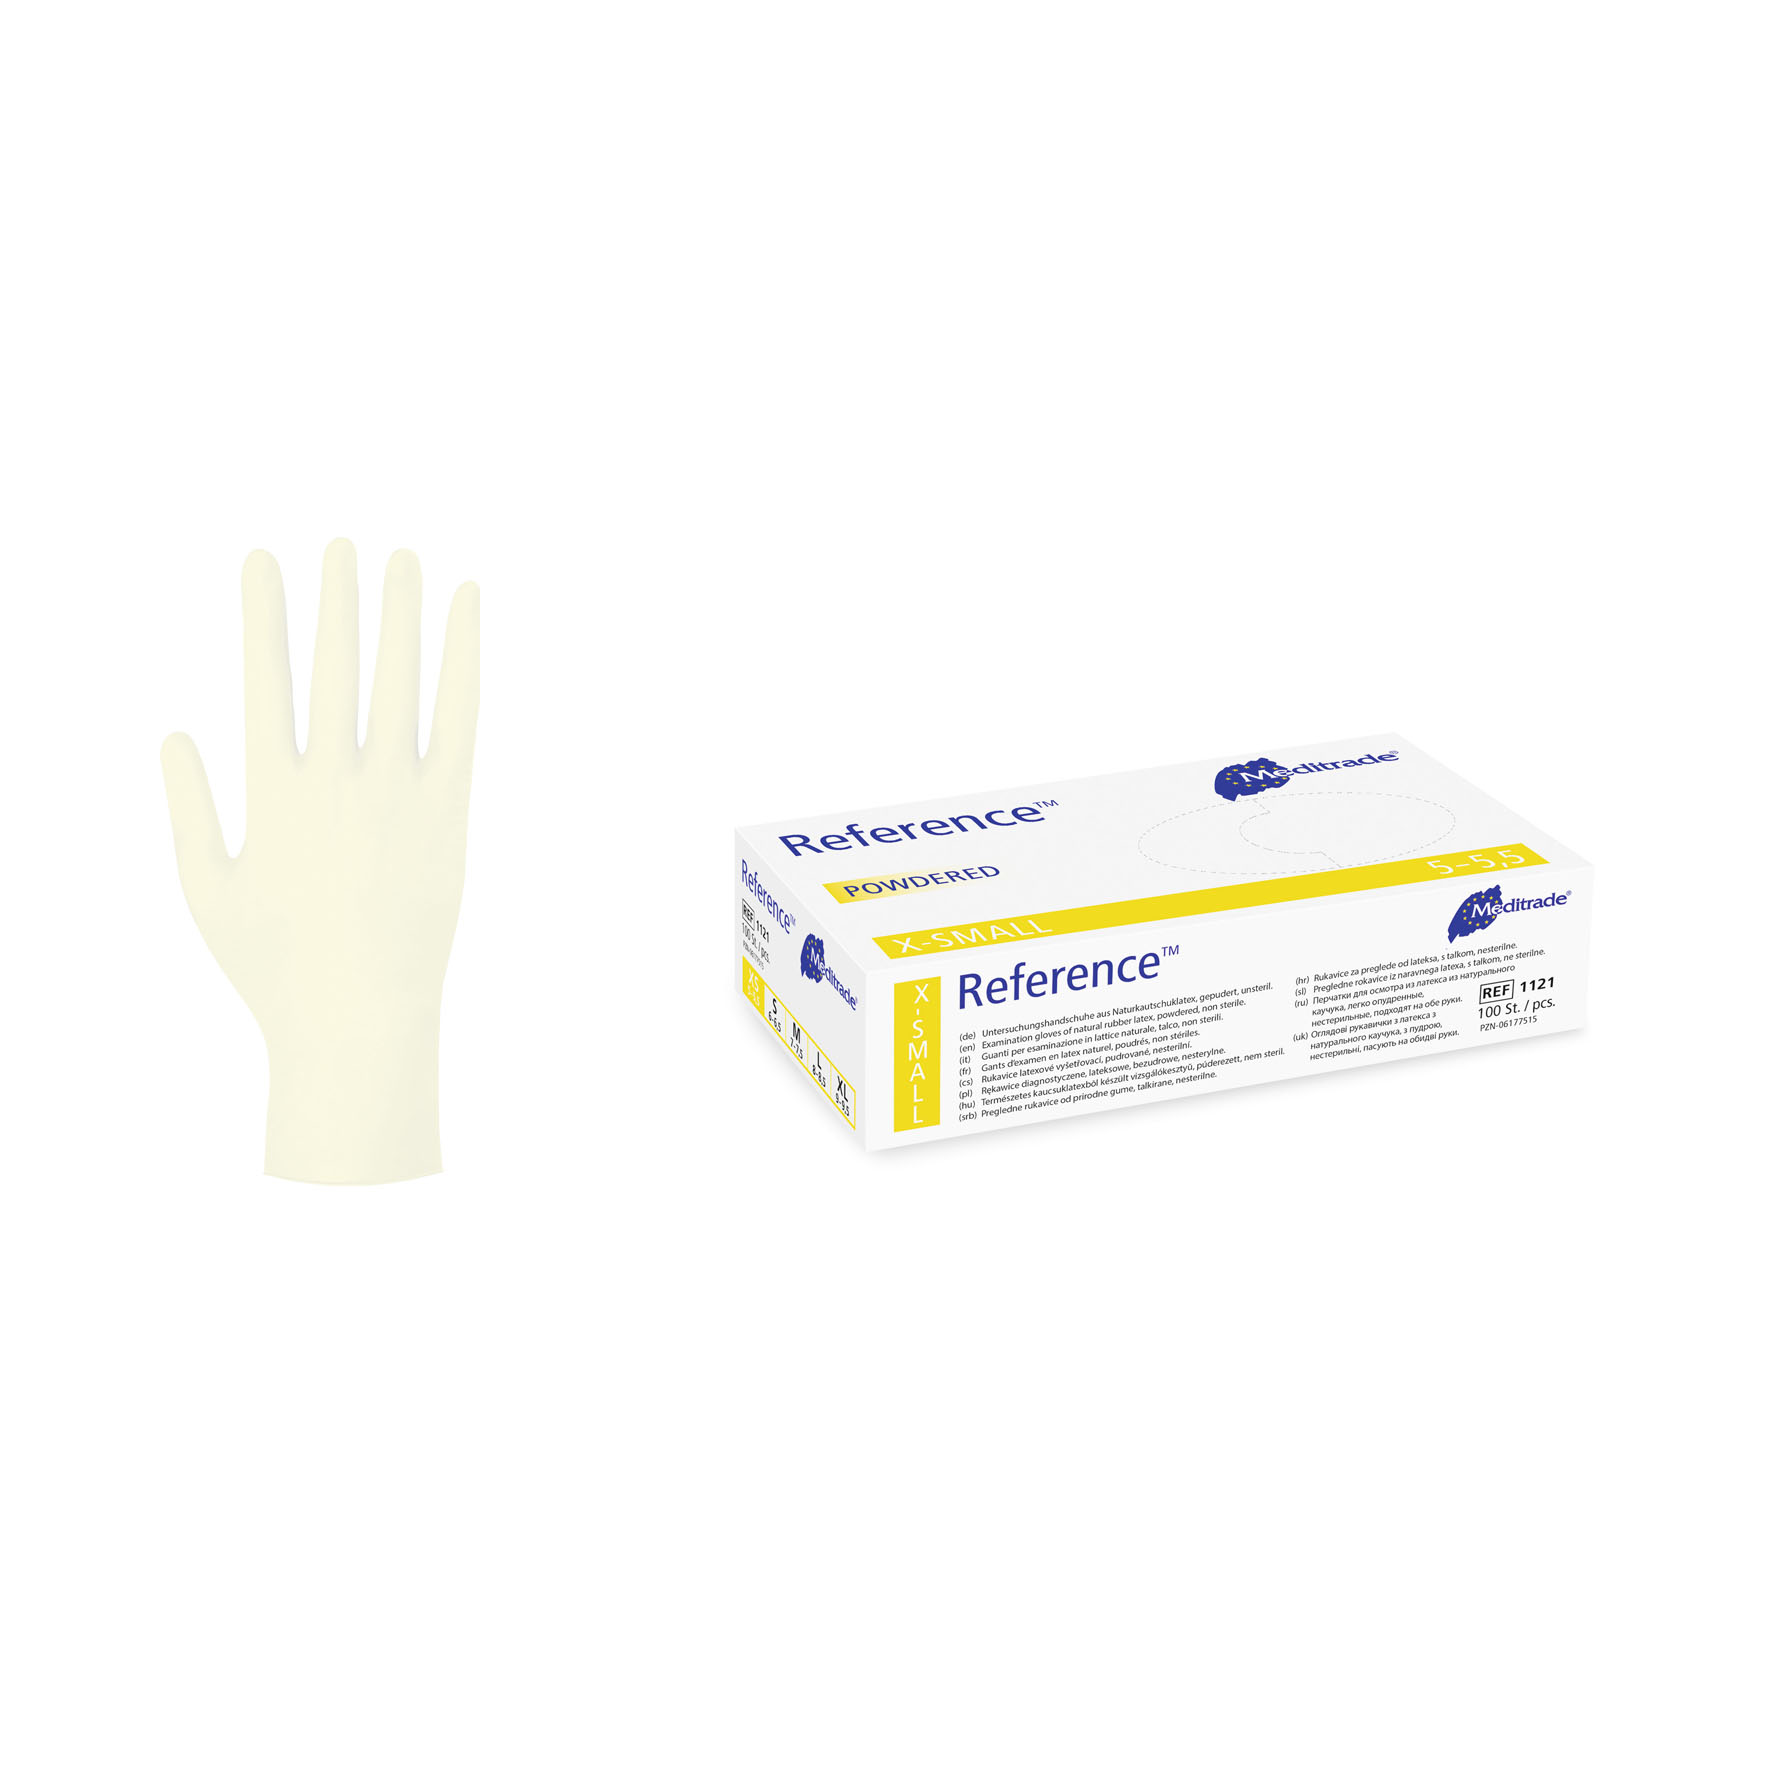 Entdecken Sie hochwertige Latex Einmalhandschuhe bei med100.de, zertifiziert nach DIN EN374-1-2-3 und DIN EN455. Unsteril, puderfrei und proteinarm bieten sie einen zuverlässigen Schutz bei der Arbeit im medizinischen Bereich.